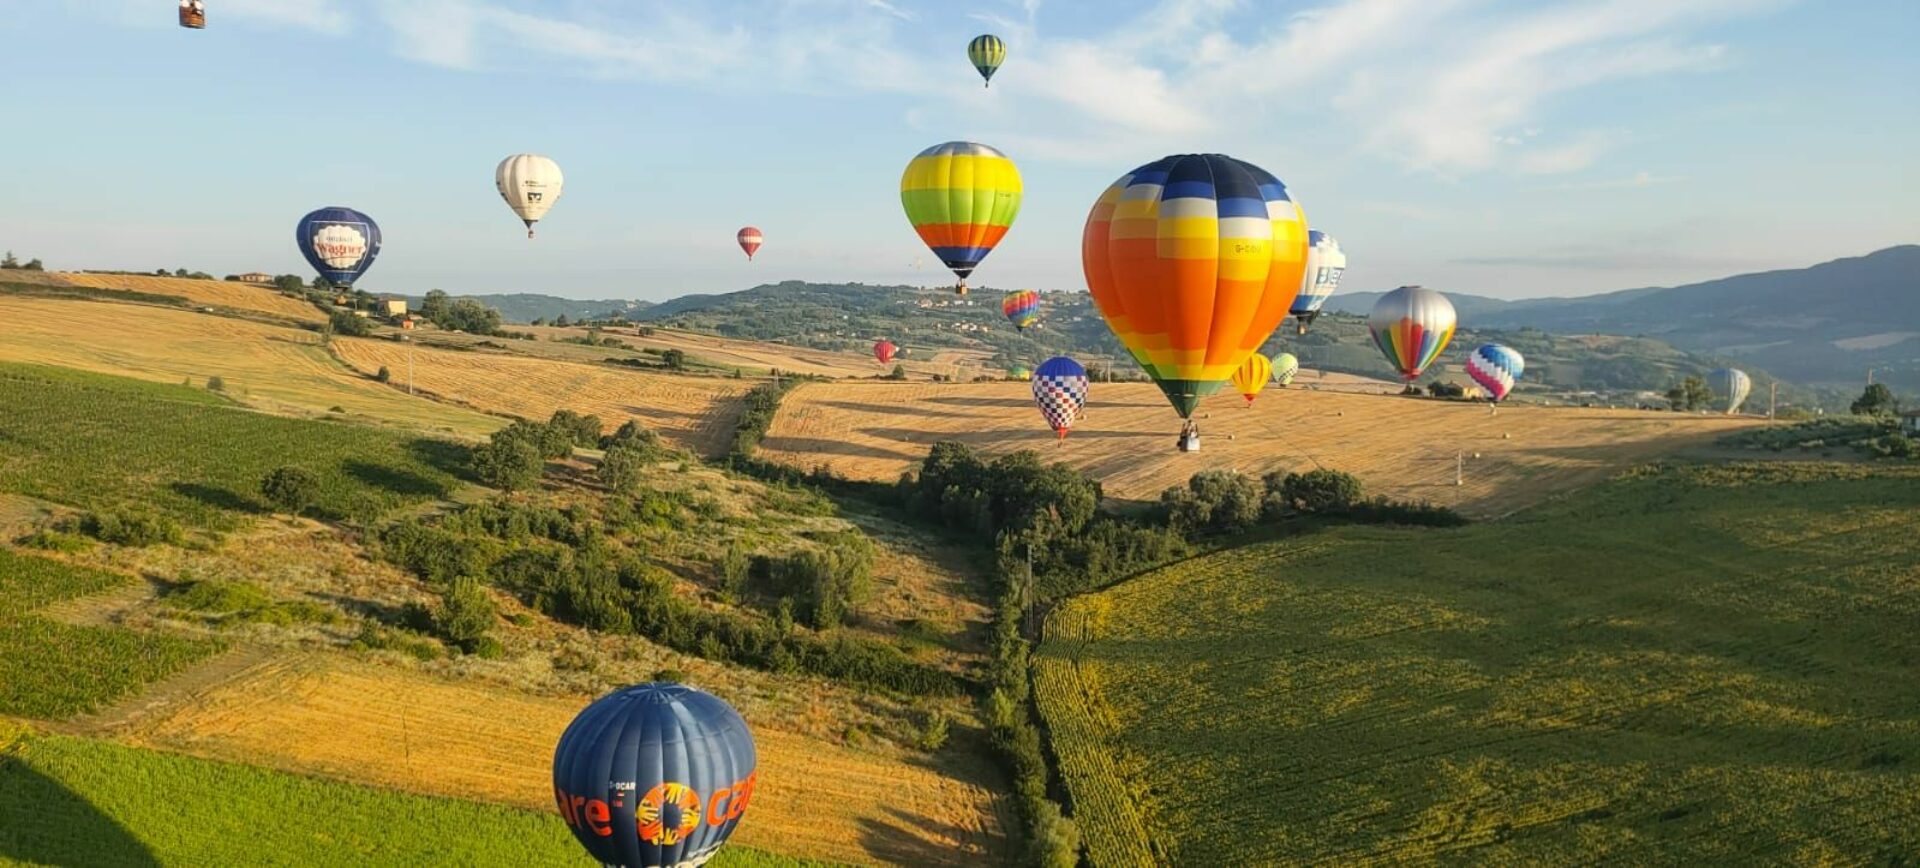 Hot Air Balloon Rides Montefalco